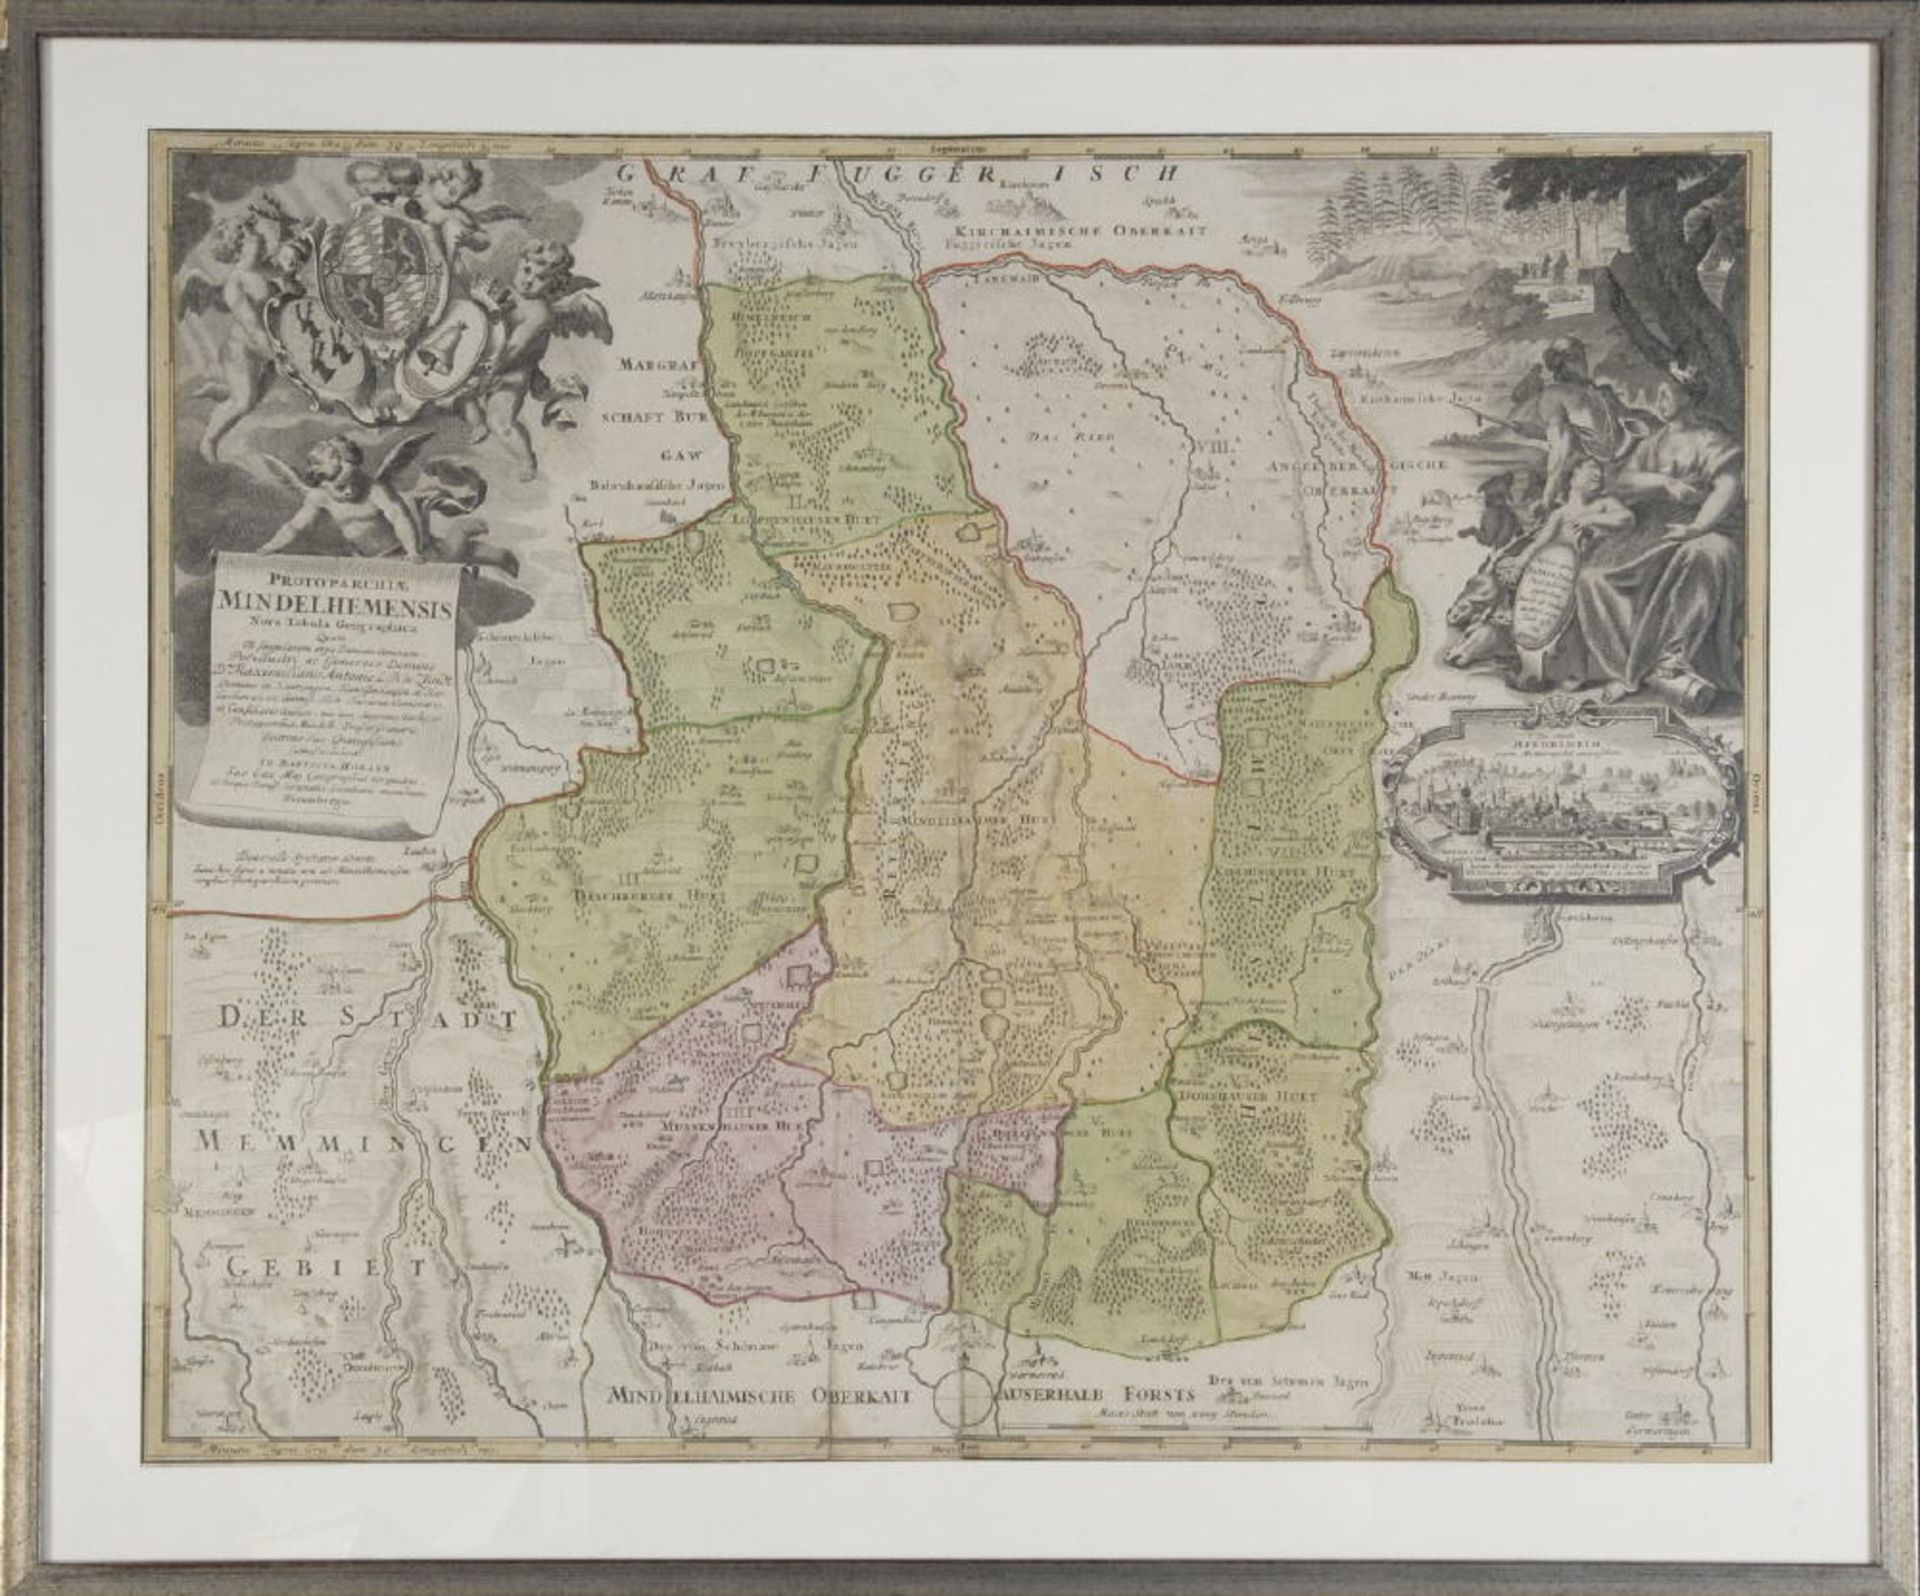 Landkarte "Mindelheim (Mindelhemensis)"Kupferstich, handcolor., 48,5 x 58 cm, von Homann, um 1700,